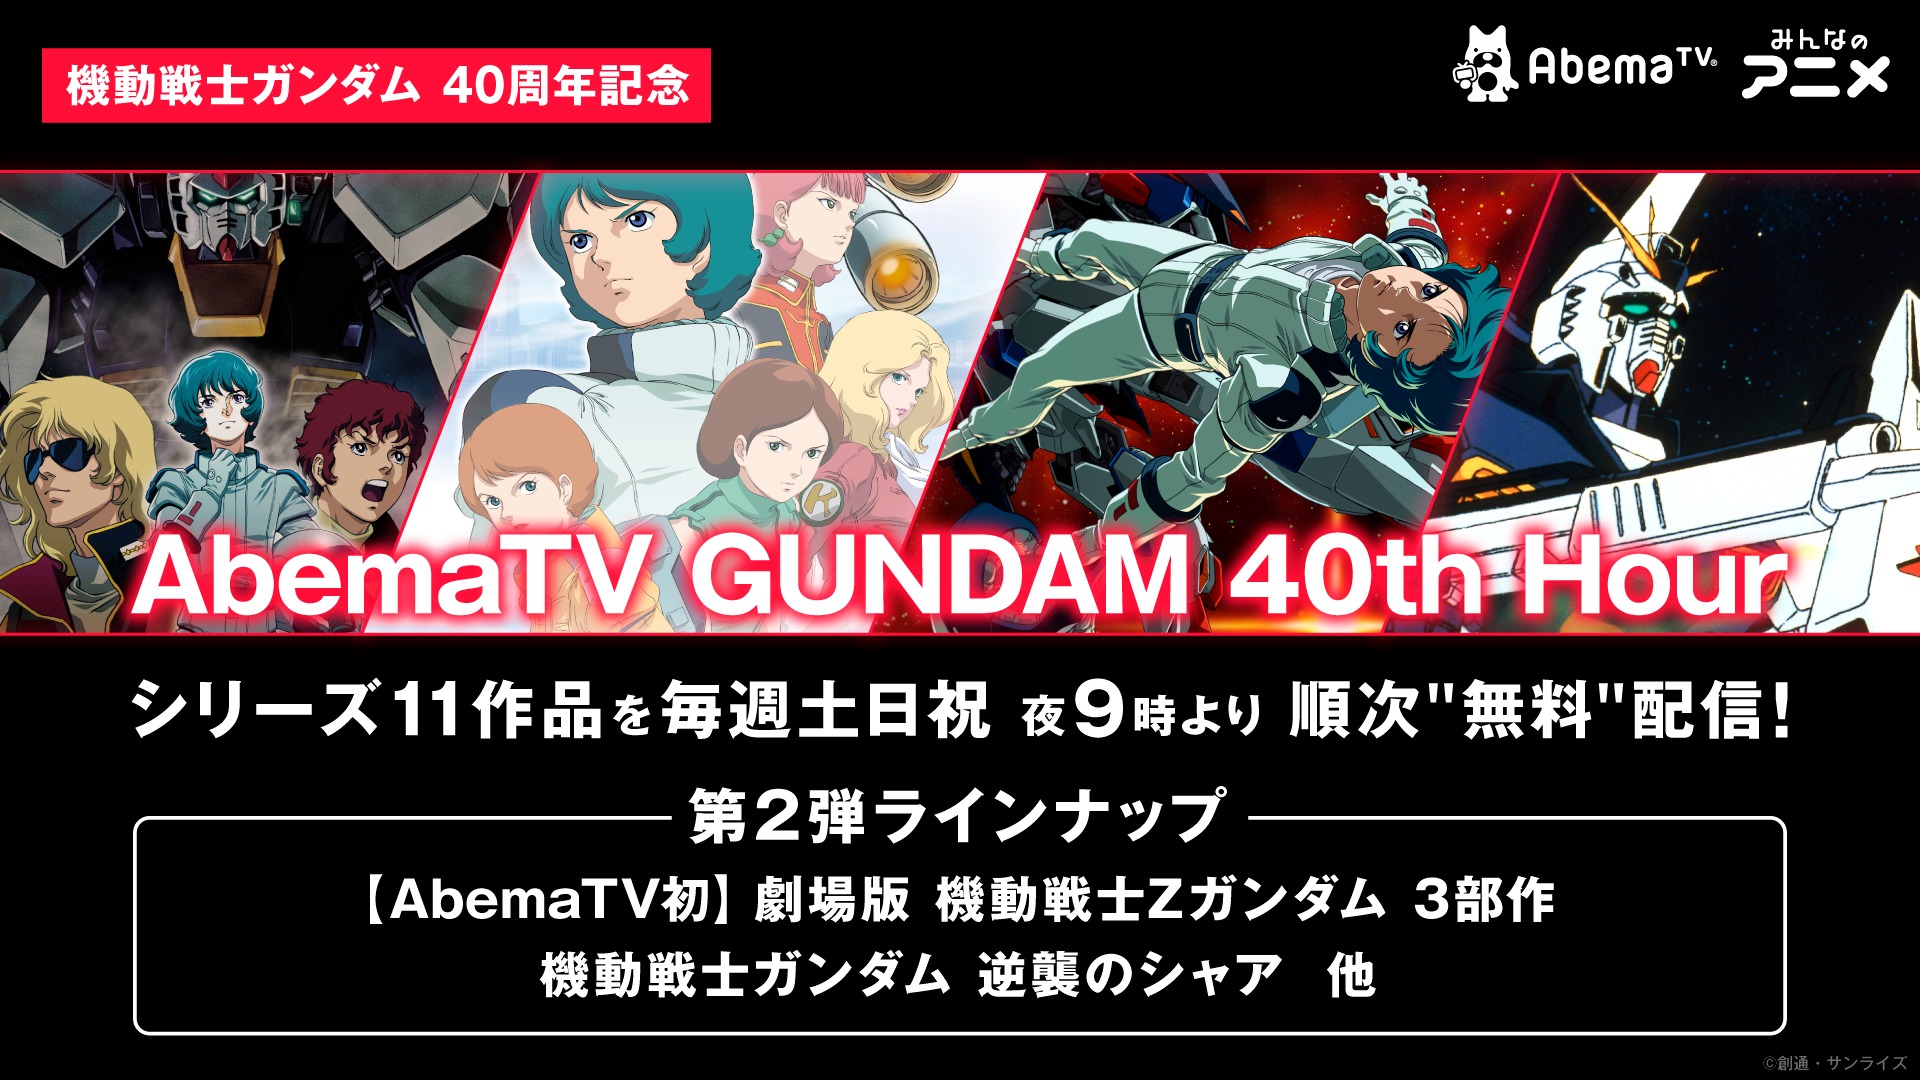 画像 Abematv Gundam 40th Hour ラインナップ第2弾発表 劇場版 機動戦士 Z ガンダム 逆襲のシャア など劇場作品が登場 の画像1 5 Spice エンタメ特化型情報メディア スパイス